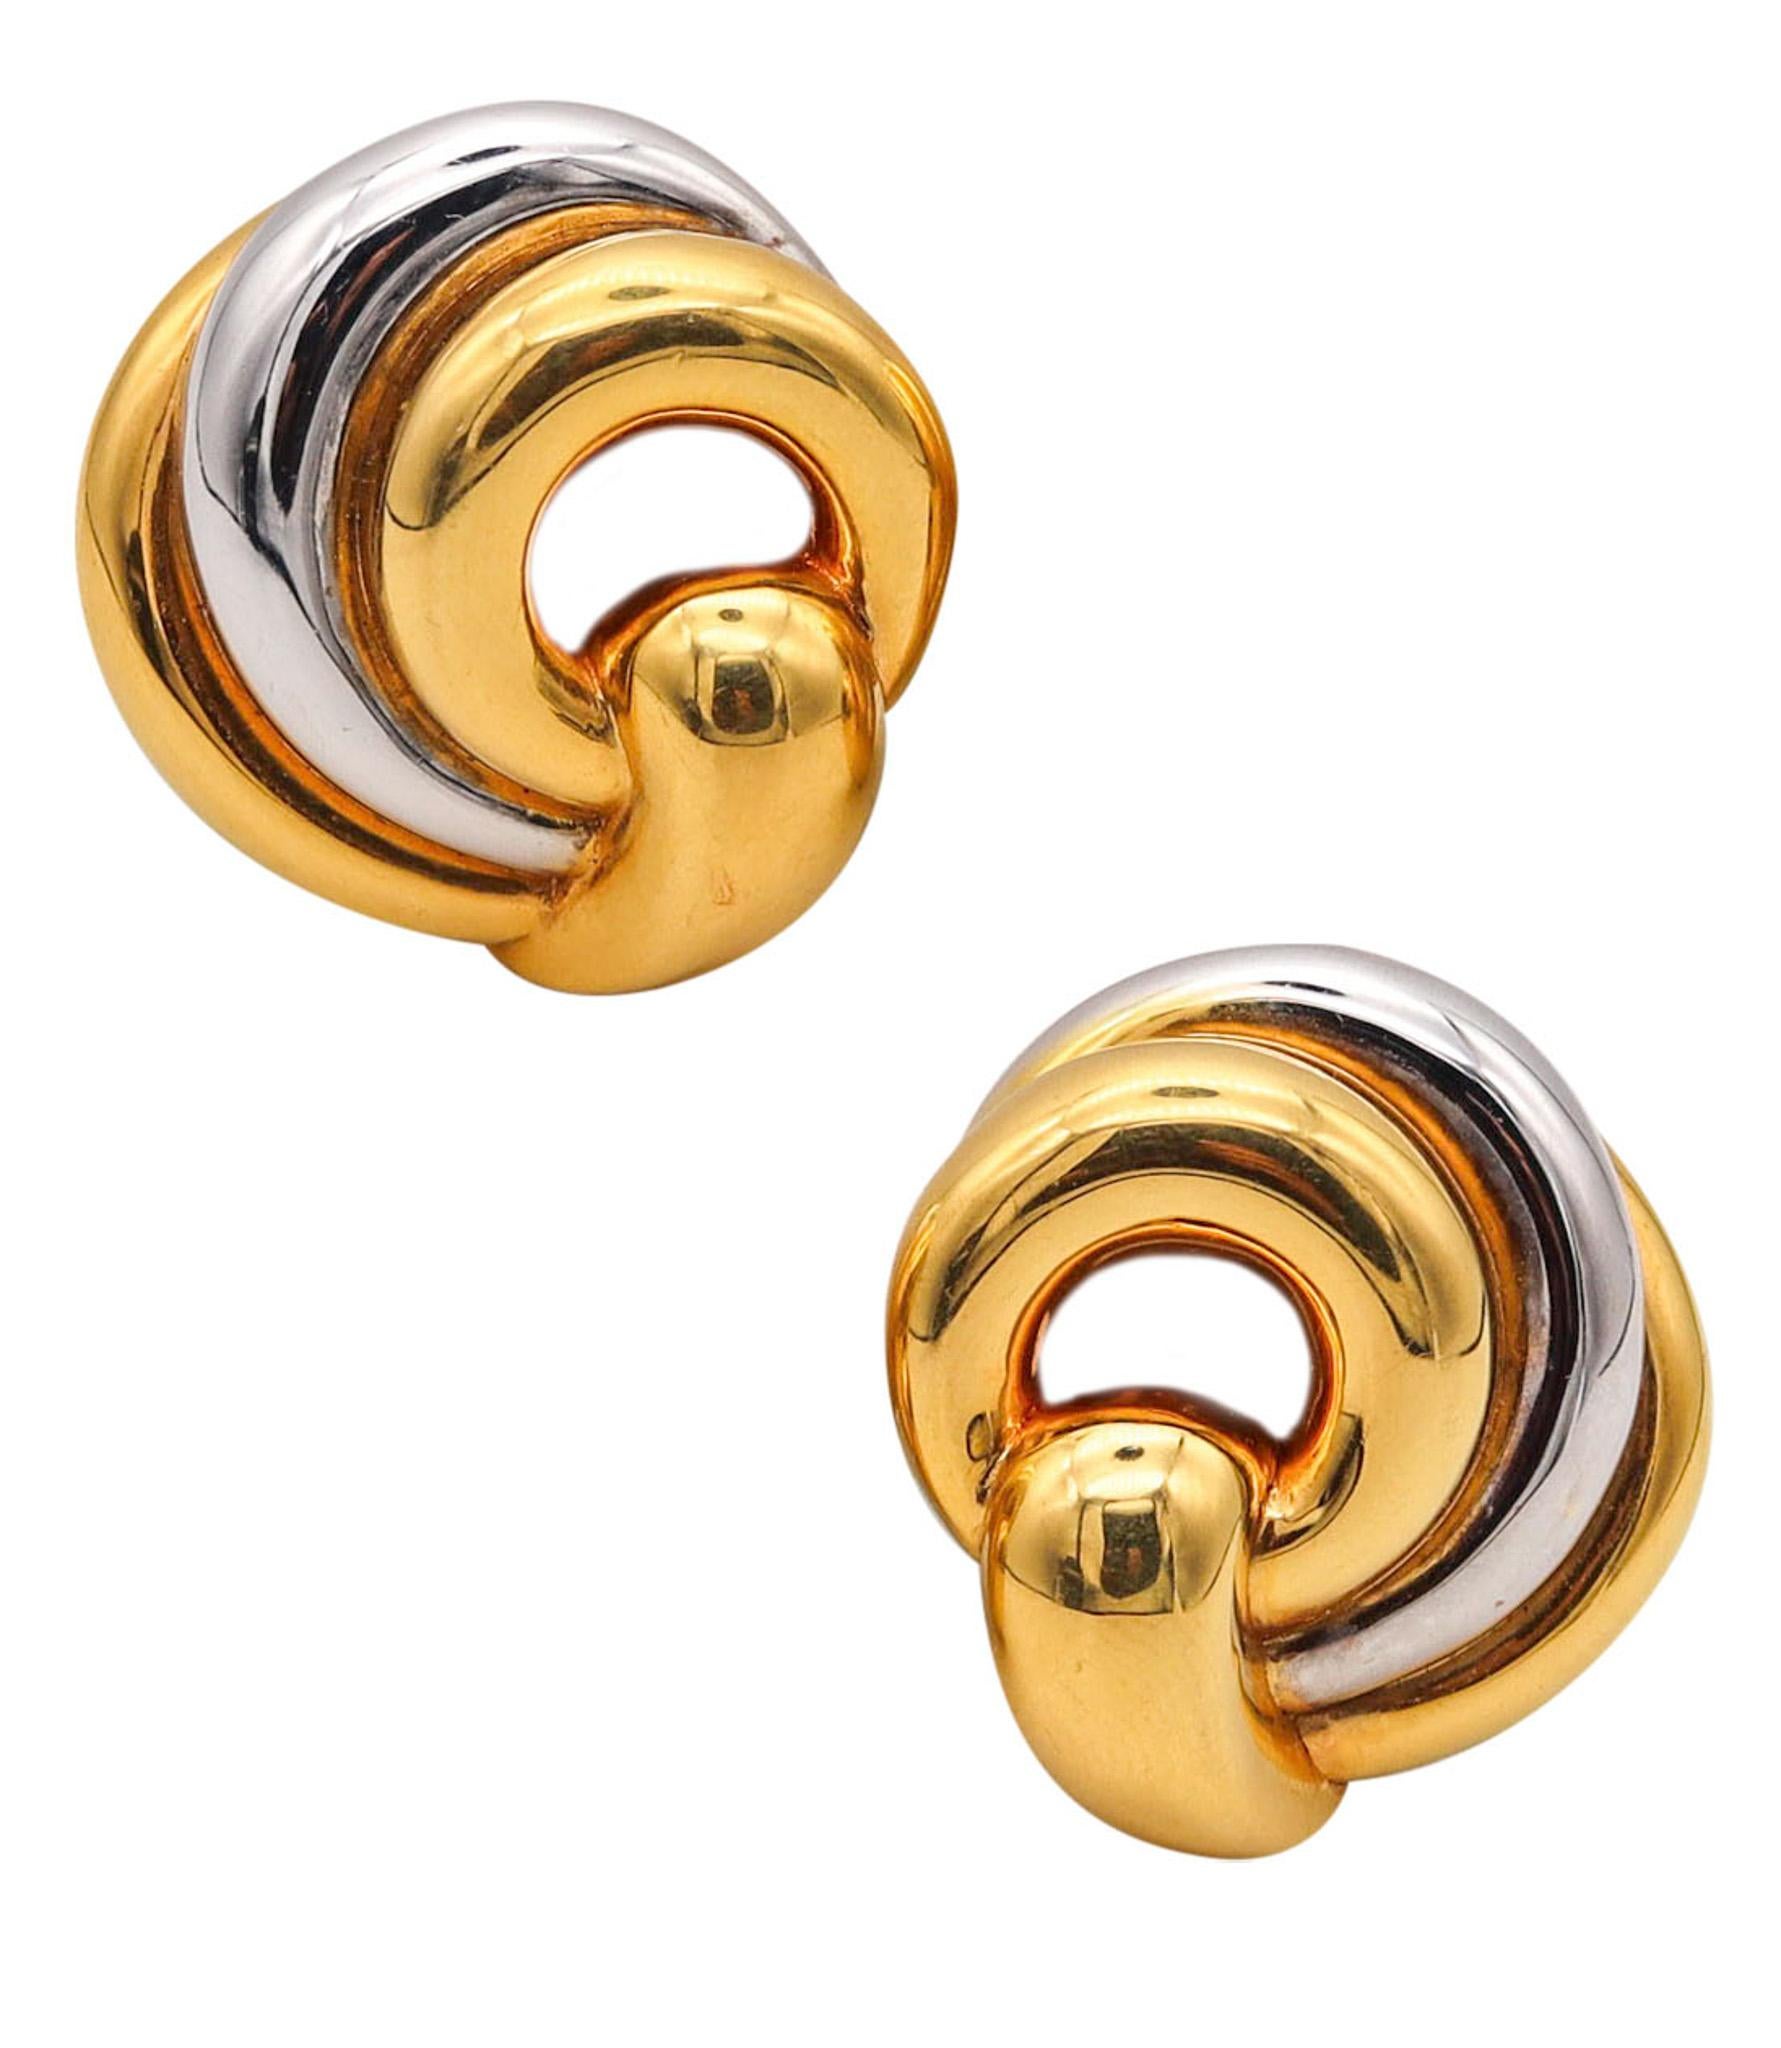 Boucles d'oreilles à clips torsadés conçues par Chaumet.

Une paire de boucles d'oreilles vintage, fabriquée à Paris en France par la maison de joaillerie Chaumet, à la fin des années 1970. Ces boucles d'oreilles ont été conçues comme des paires